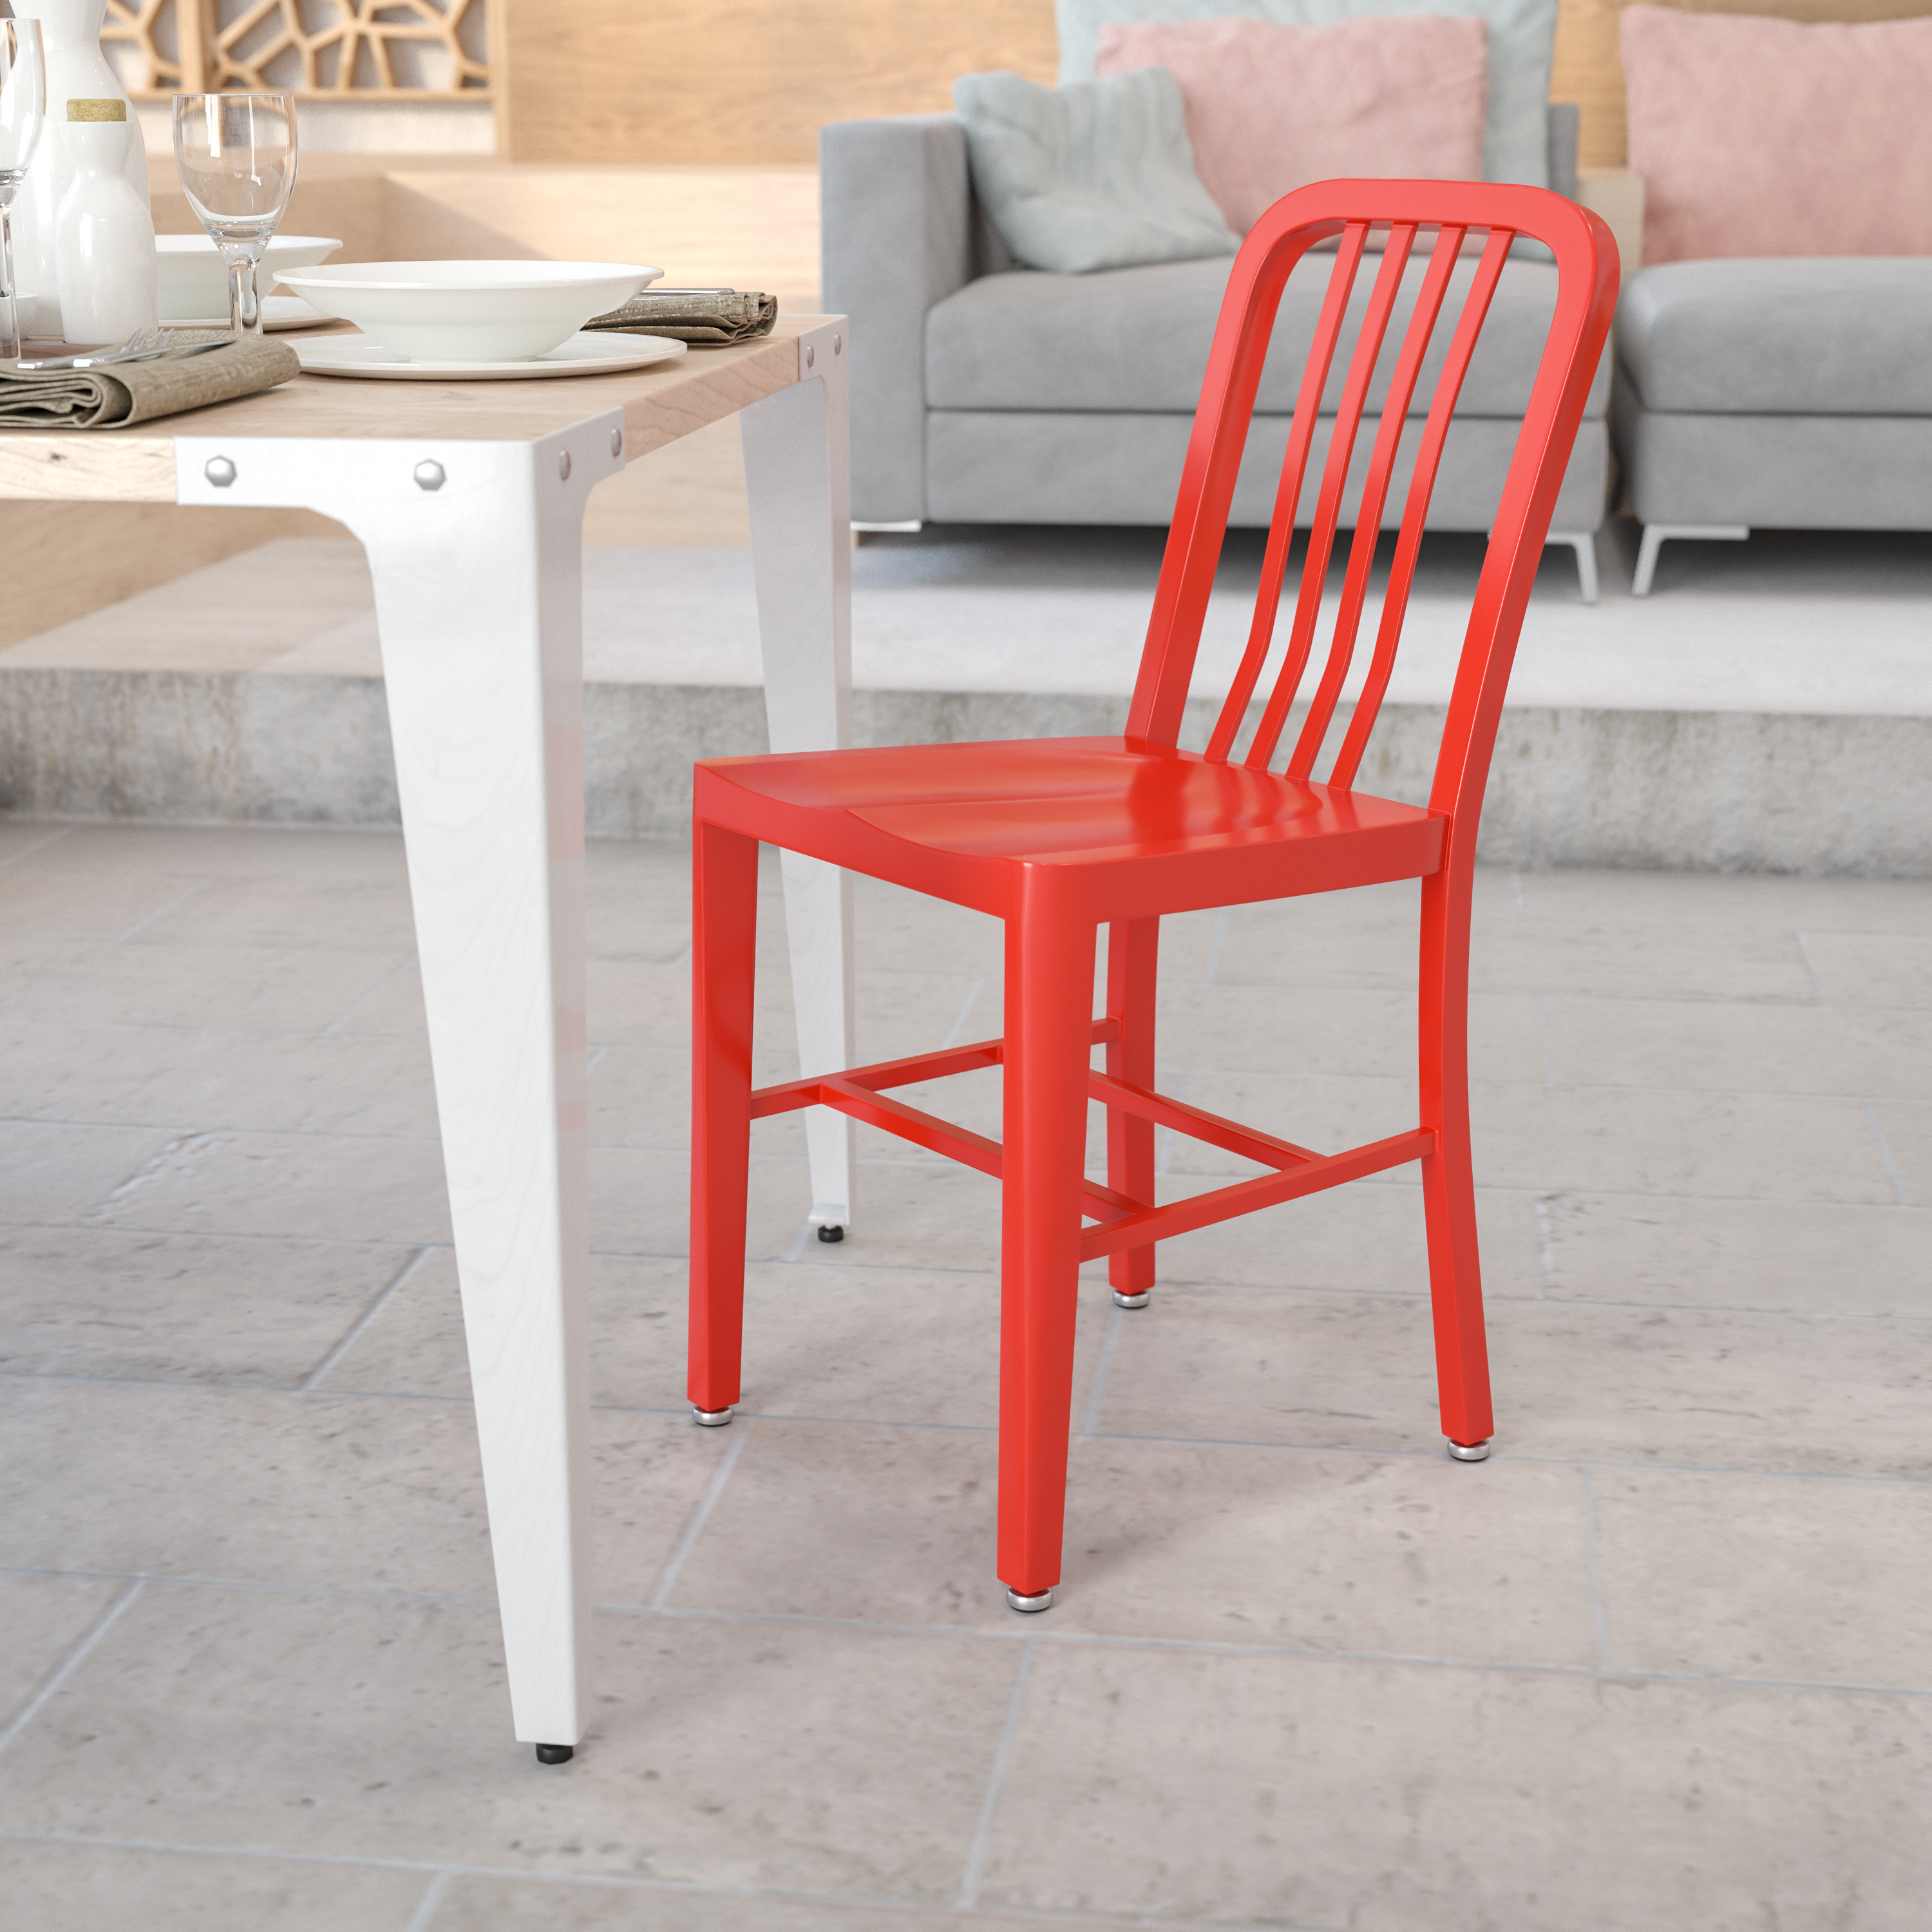 BizChair Commercial Grade Red Metal Indoor-Outdoor Chair - image 1 of 12